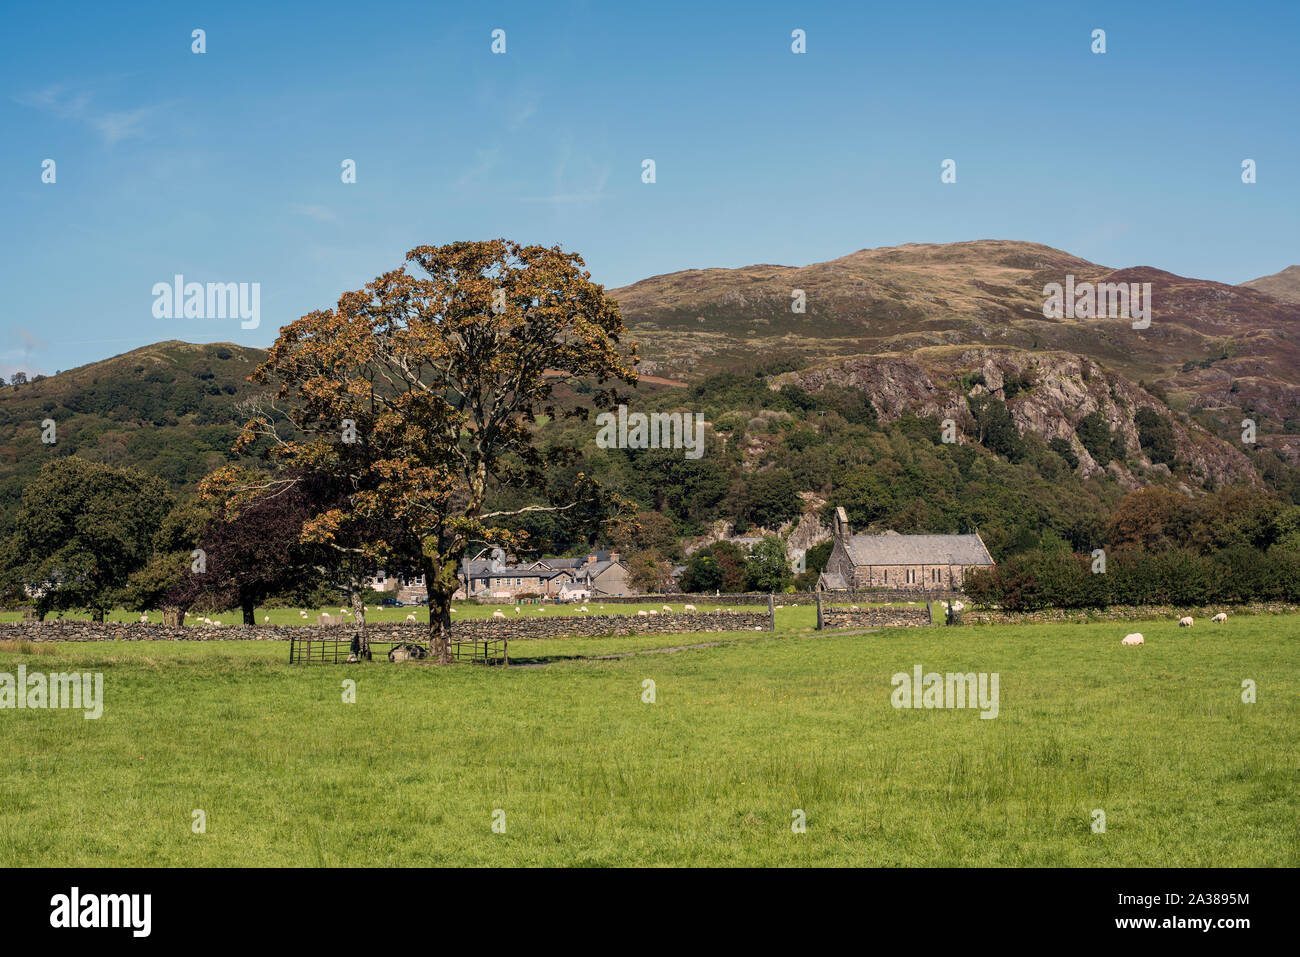 Grabstätte des walisischen Hund Gelert unter einem Baum in einem Feld von Schafen, in Beddgelert, Wales, Großbritannien. mit Kapelle und das Dorf im Hintergrund. Stockfoto